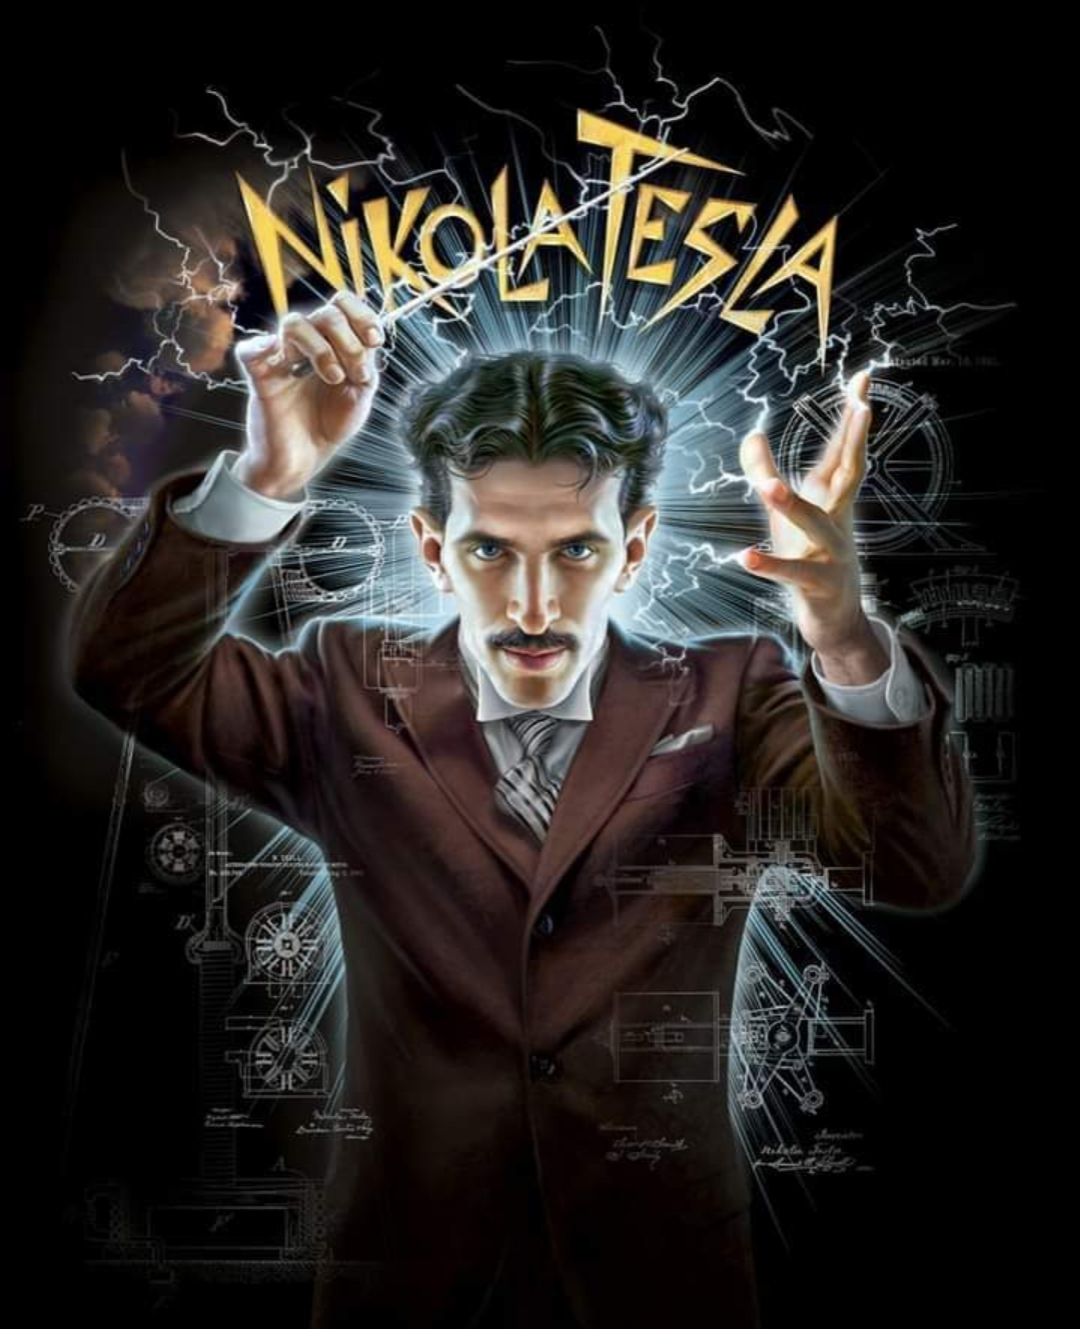 En 1943, se apagó una de las mentes más brillantes en la historia, muere Nikola Tesla.